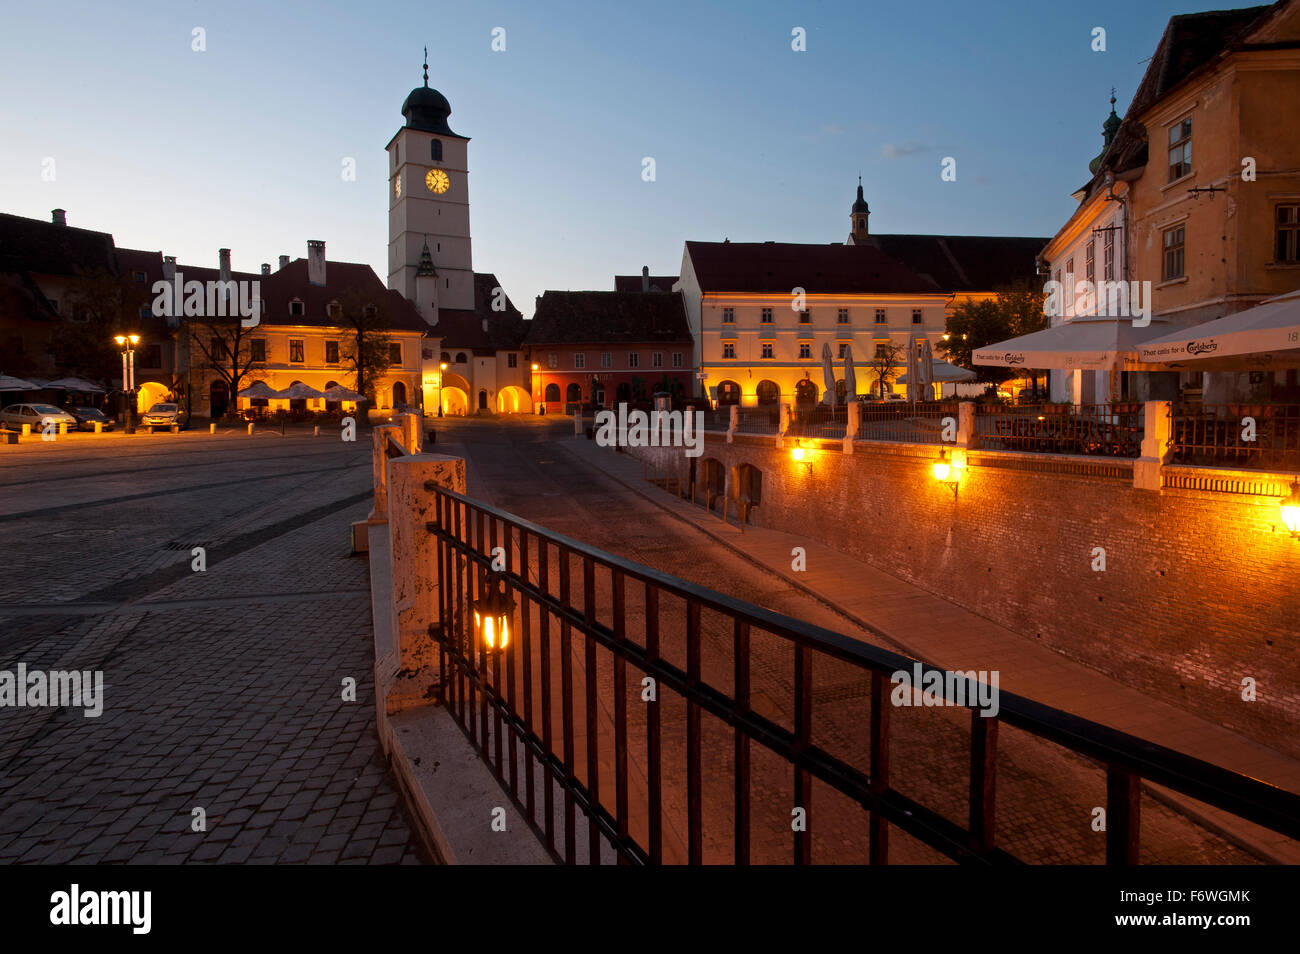 Piata Huet nella parte storica della città, Sibiu, Transilvania, Romania Foto Stock